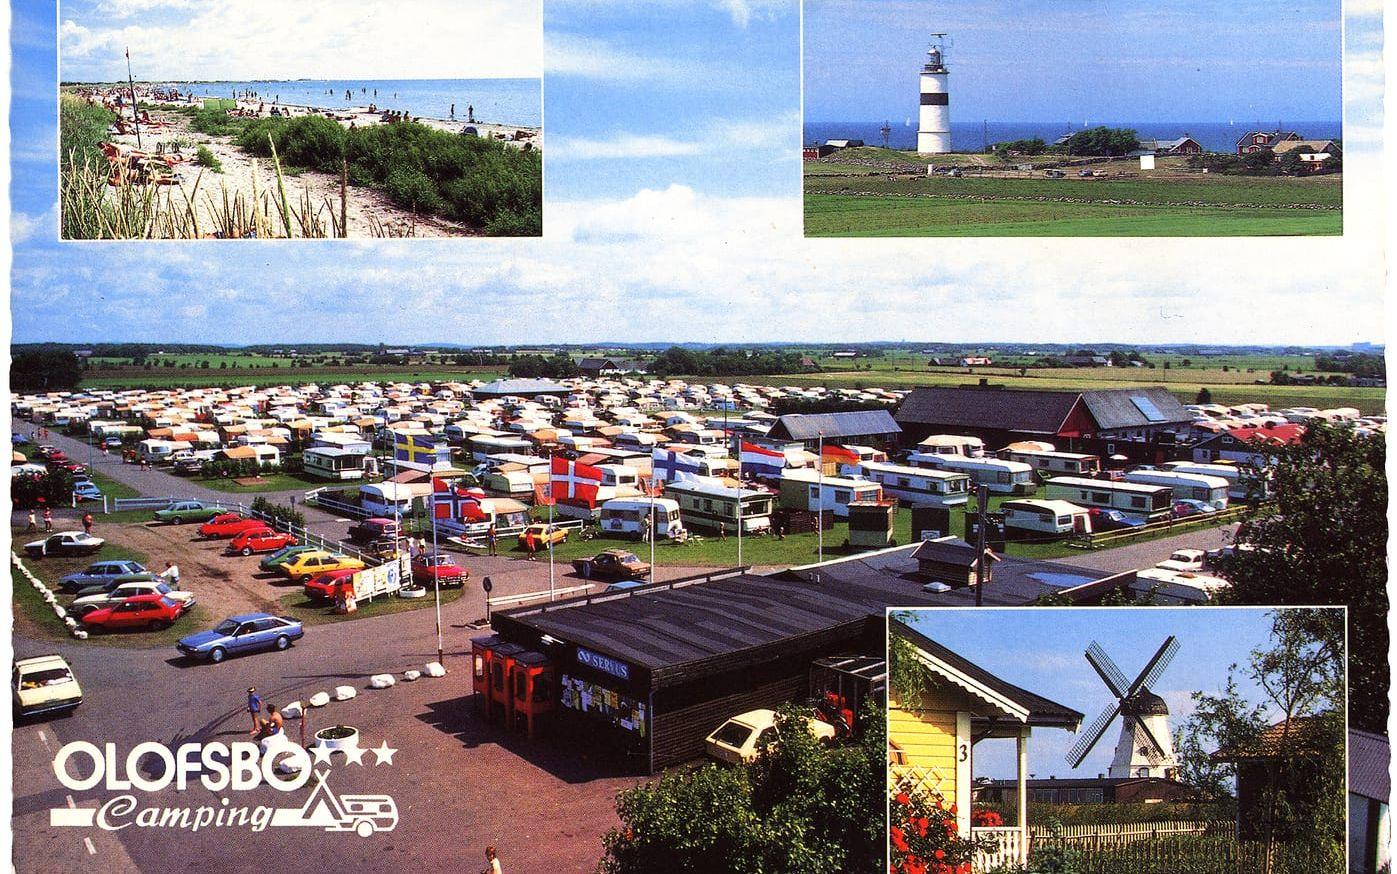 Välkomna! På 1980-talet fick campinggästerna ett vykort tillsammans med informationshandlingarna. Du Mats fotograferade.